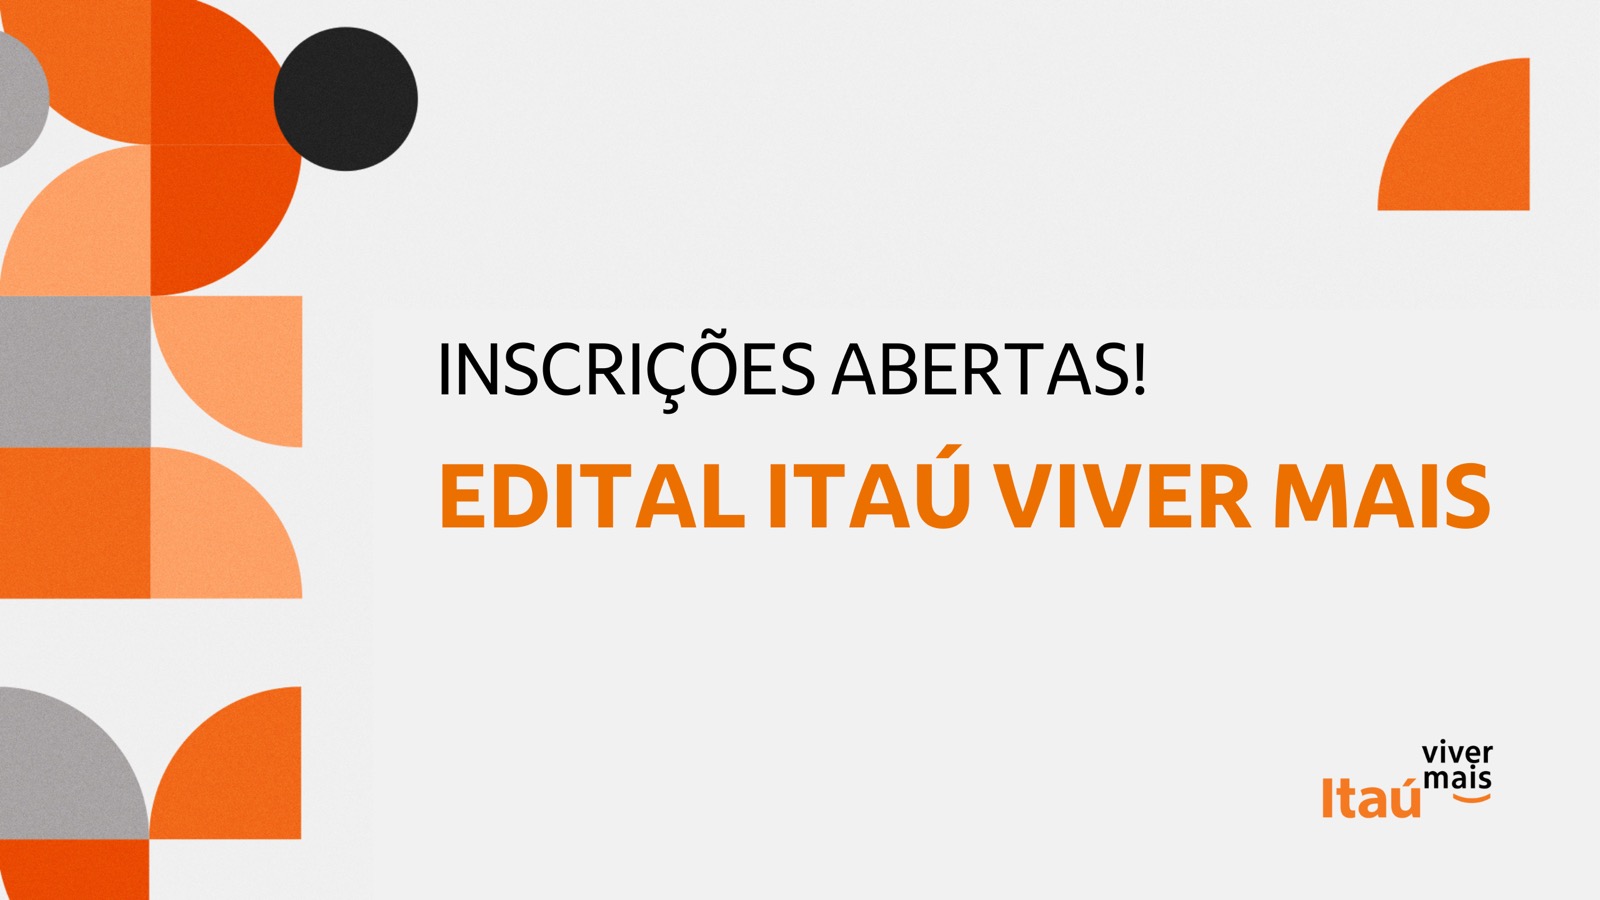 Abertas as inscrições para o Edital Itaú Viver Mais 2023!